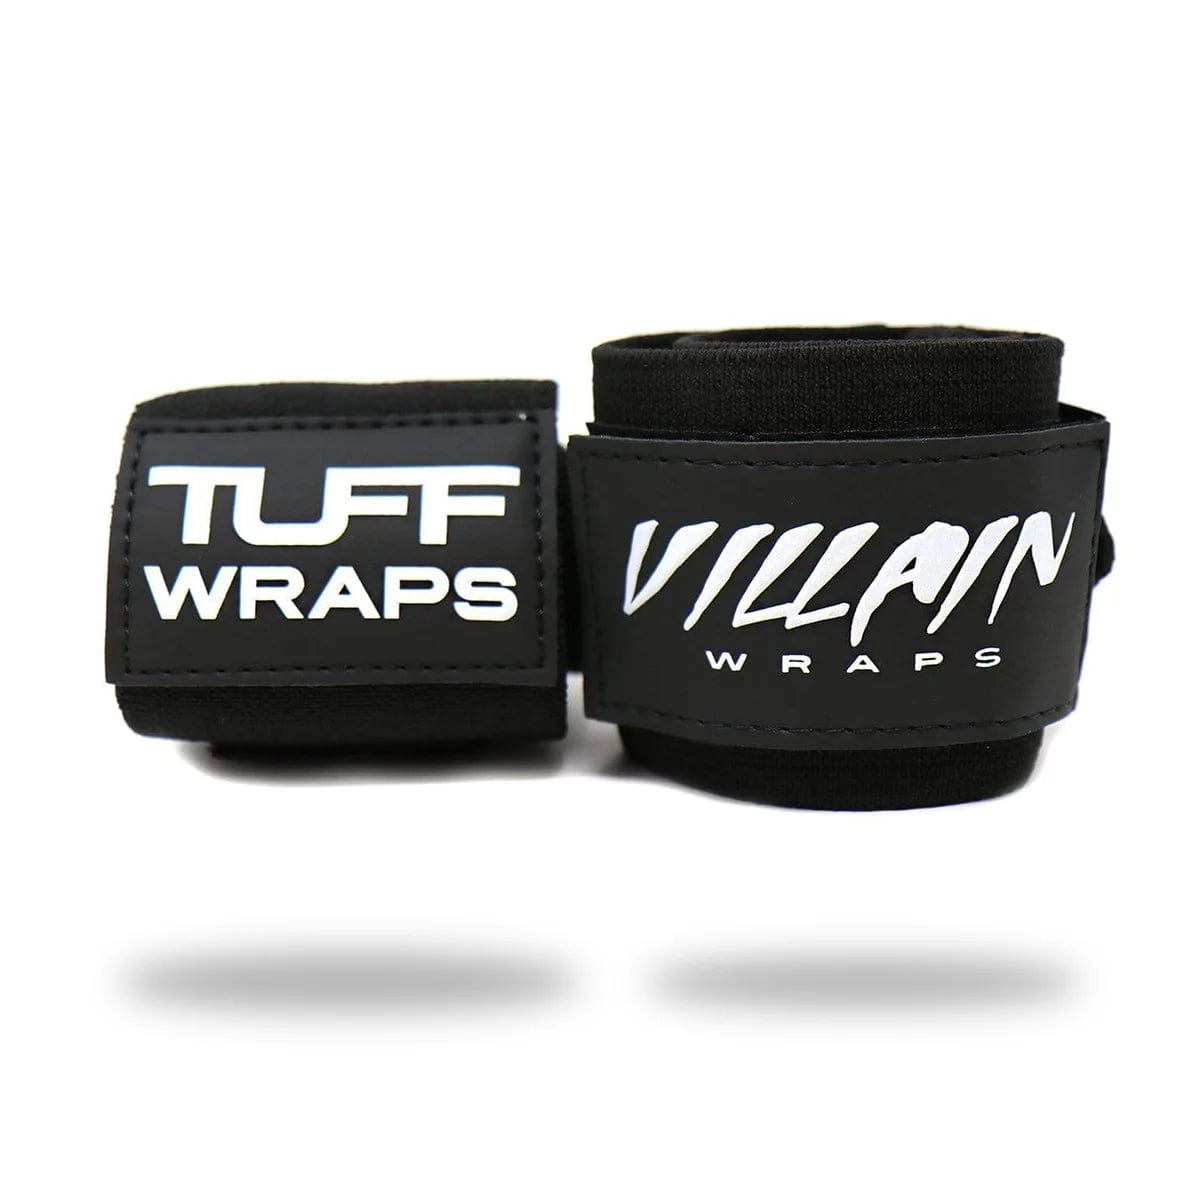 30" Villain "STIFF" Wrist Wraps - All Black TuffWraps.com